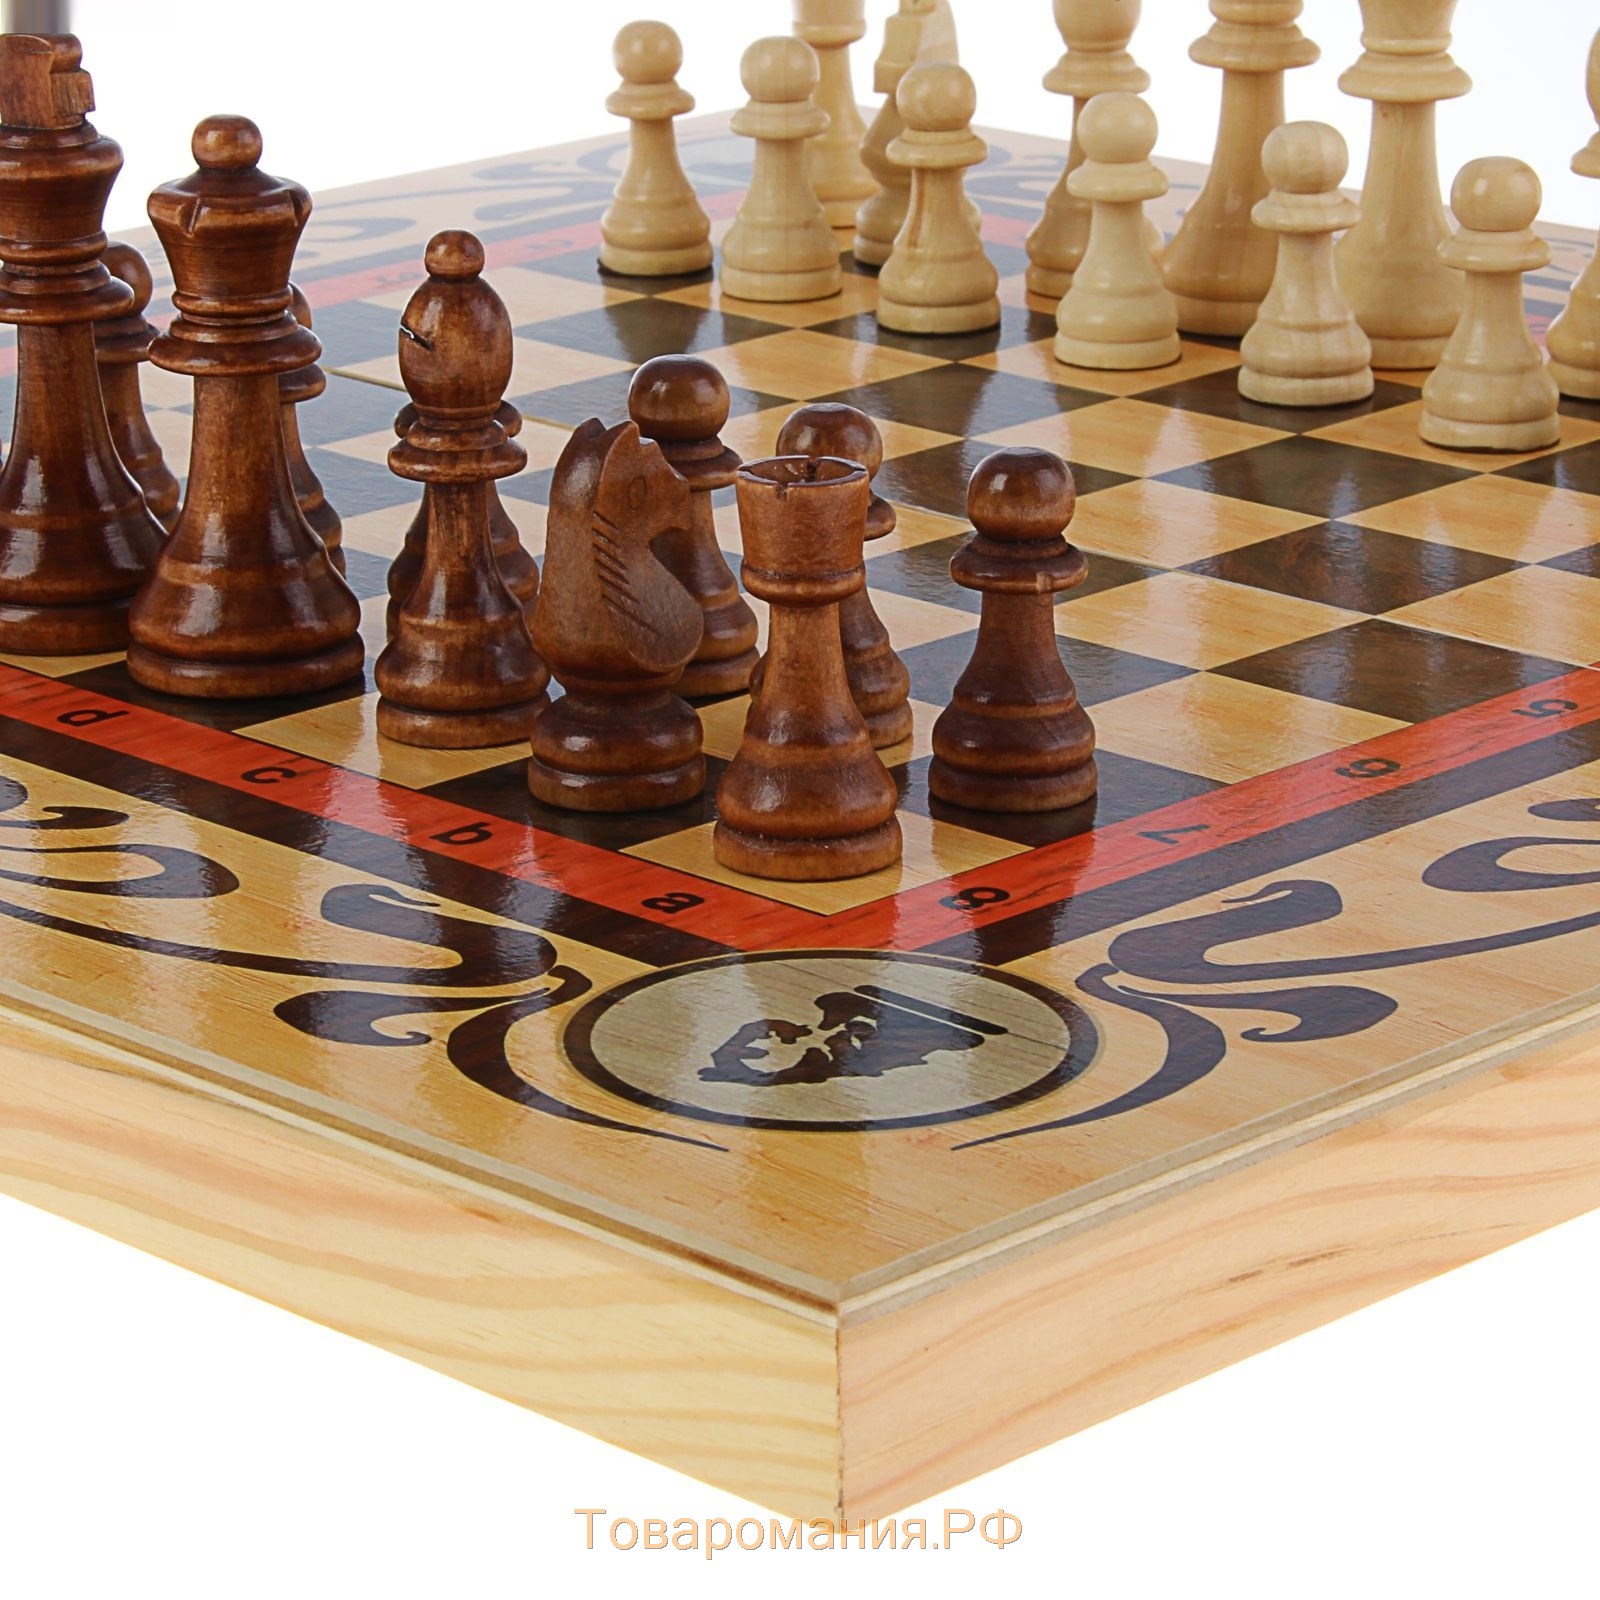 Нарды шашки играть. 9818 Шашки шахматы нарды. Шахматы, шашки, нарды 3 в 1. Шахматы "статус" 3в1 (шахматы, нарды, шашки) Jumanji. Игра 3в1 (шахматы, шашки, нарды), доска дерево+пластик (40/40 см).